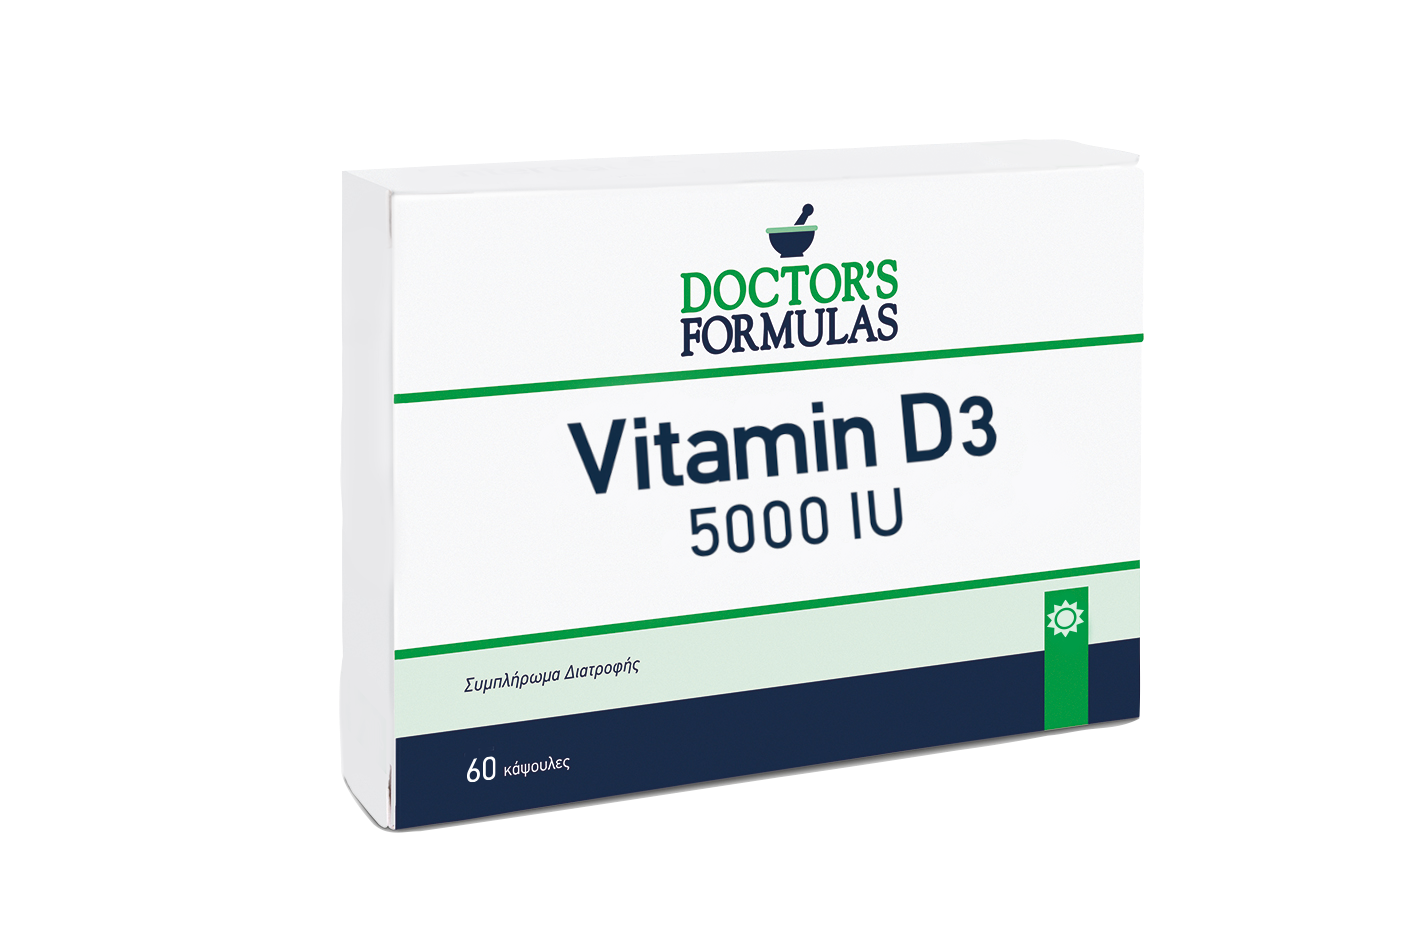 VITAMIN D3 5000 IU | Potent Vitamin D3 Formula | Doctors Formulas